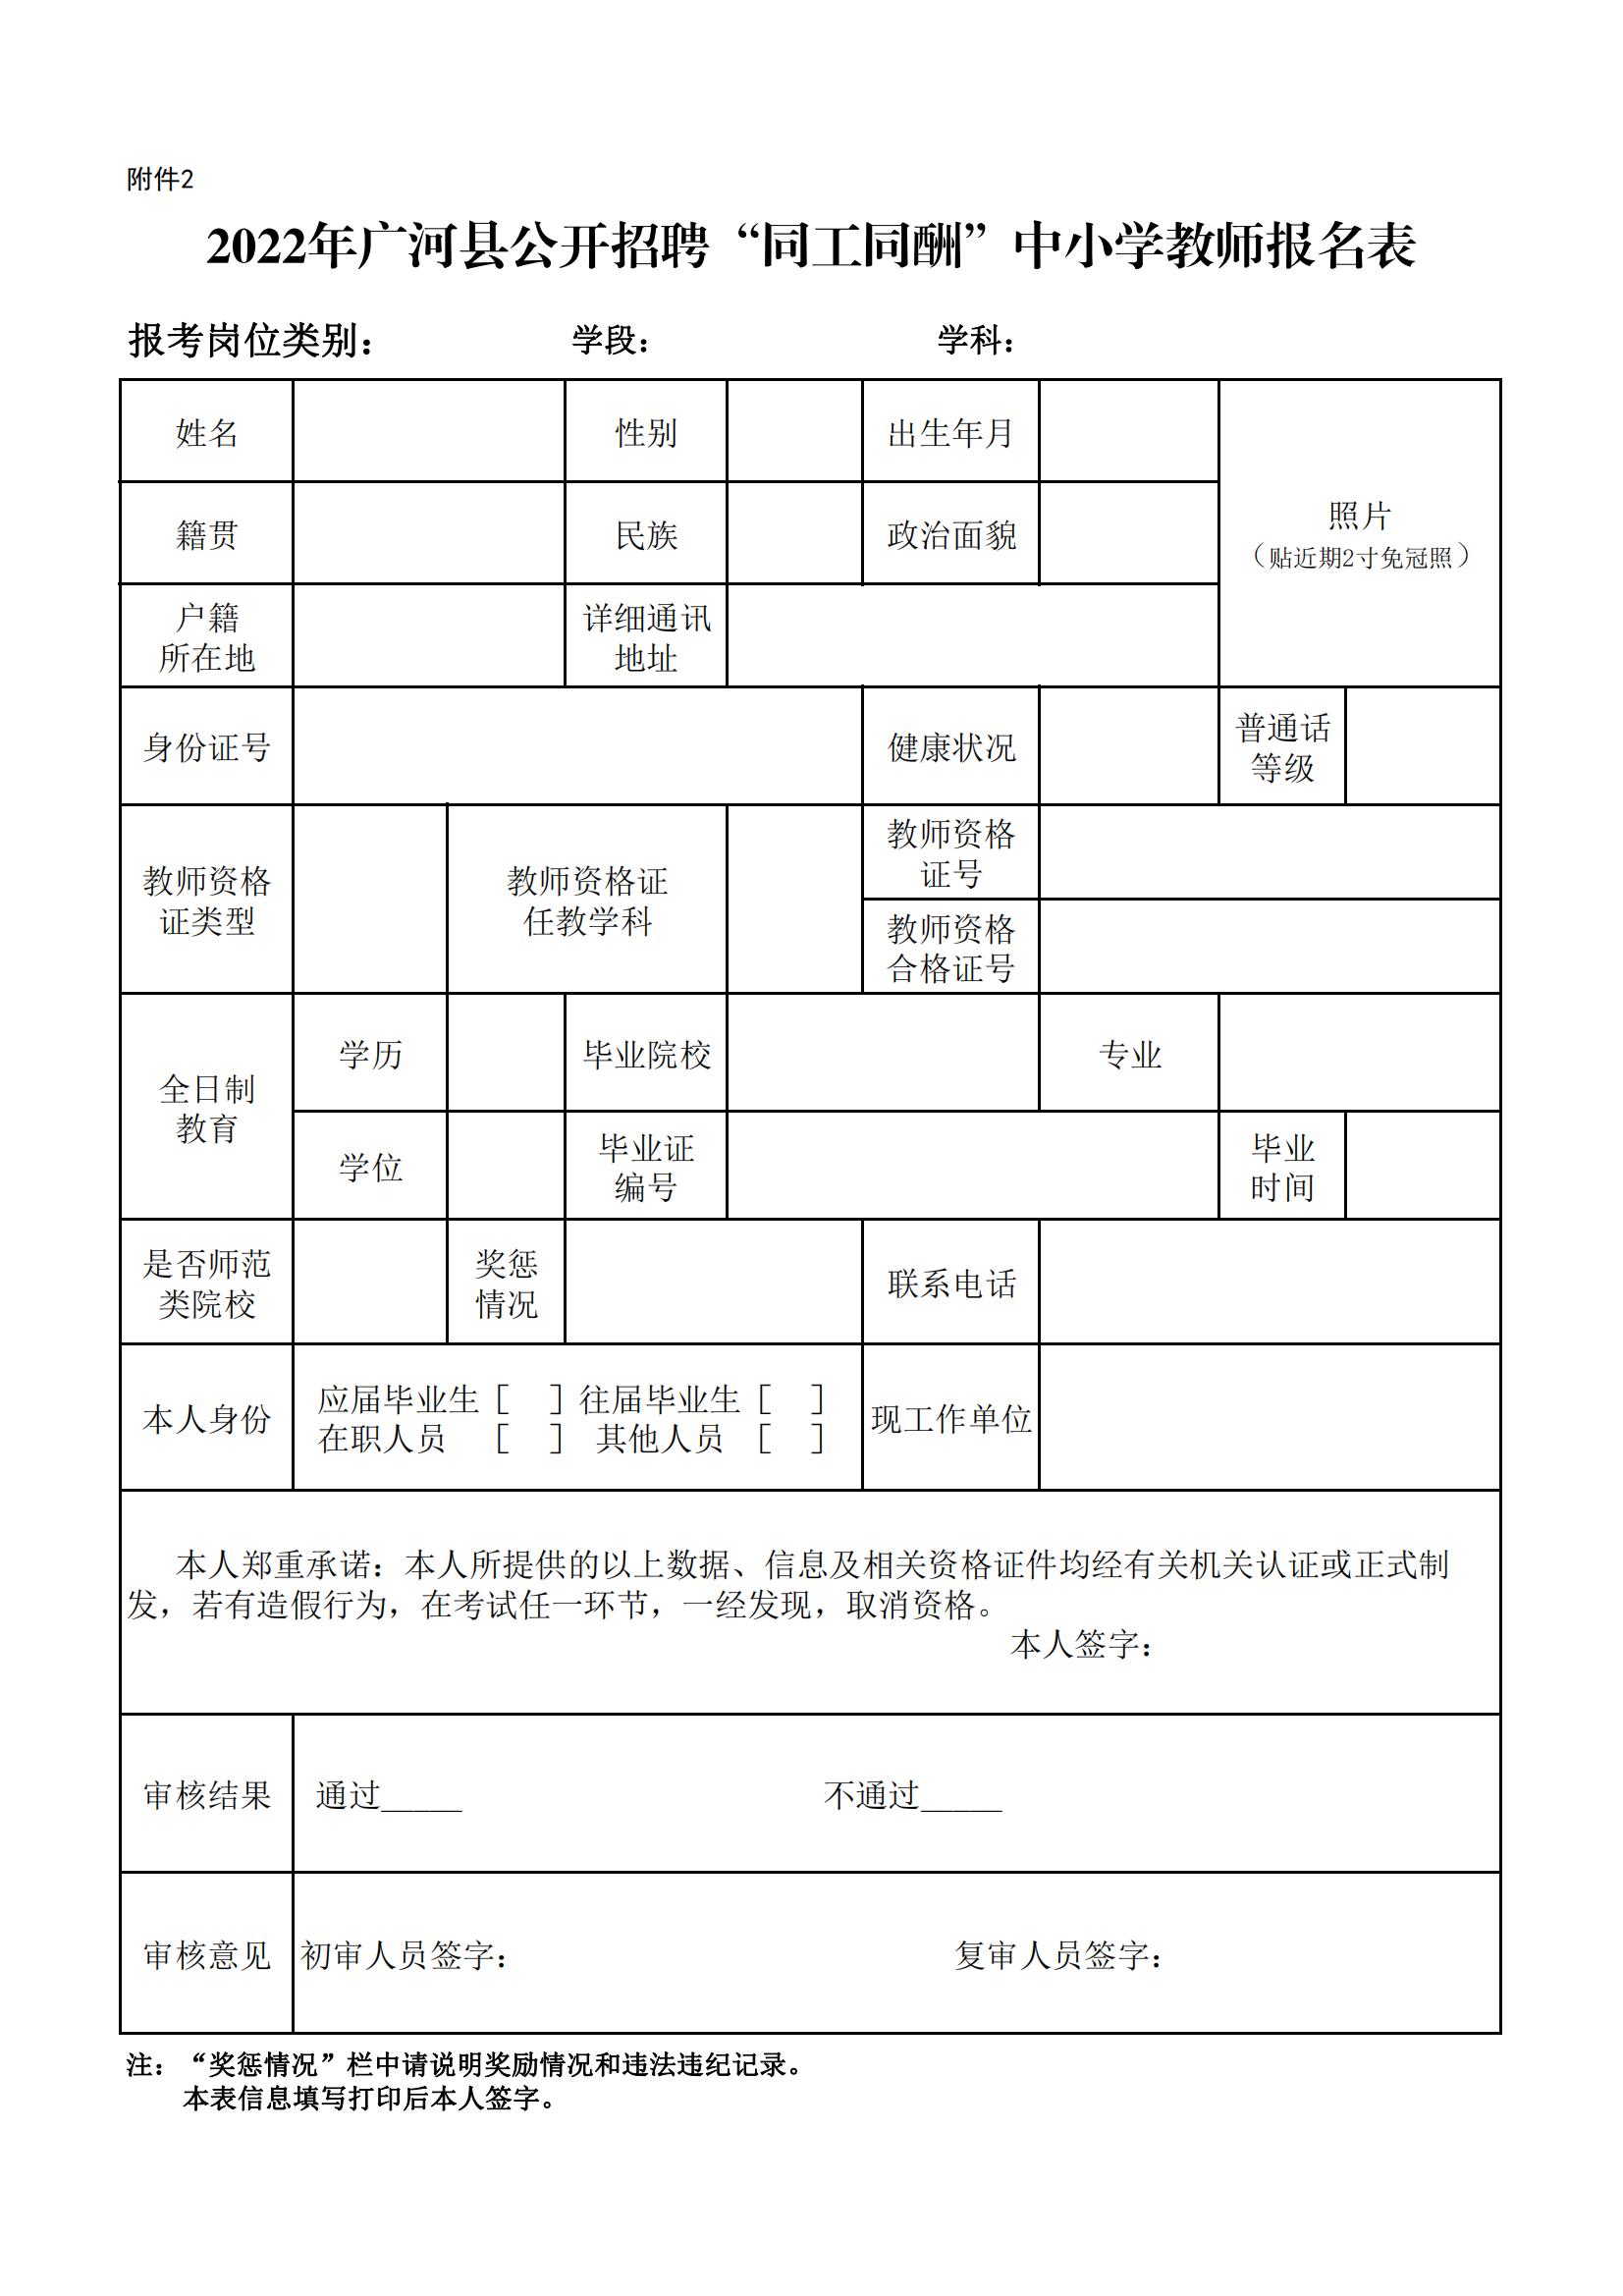 2022年广河县公开招聘“同工同酬”中小学教师报名表_00.jpg